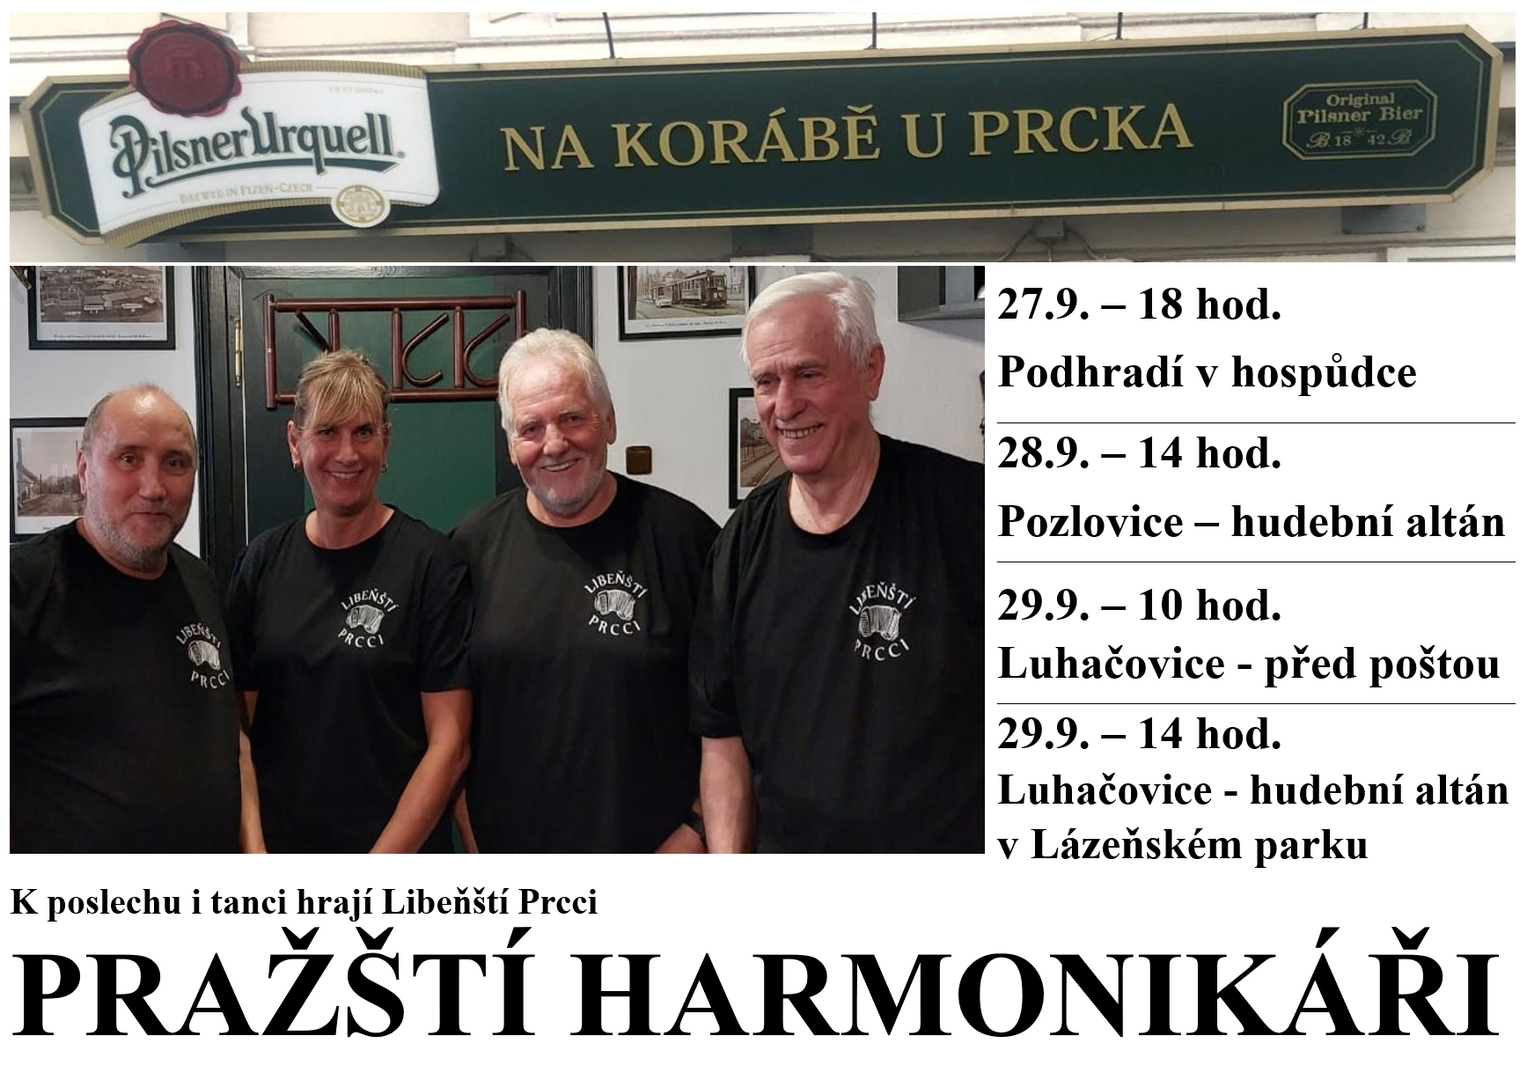 Plakát Pražští harmonikáři v centru Pozlovic